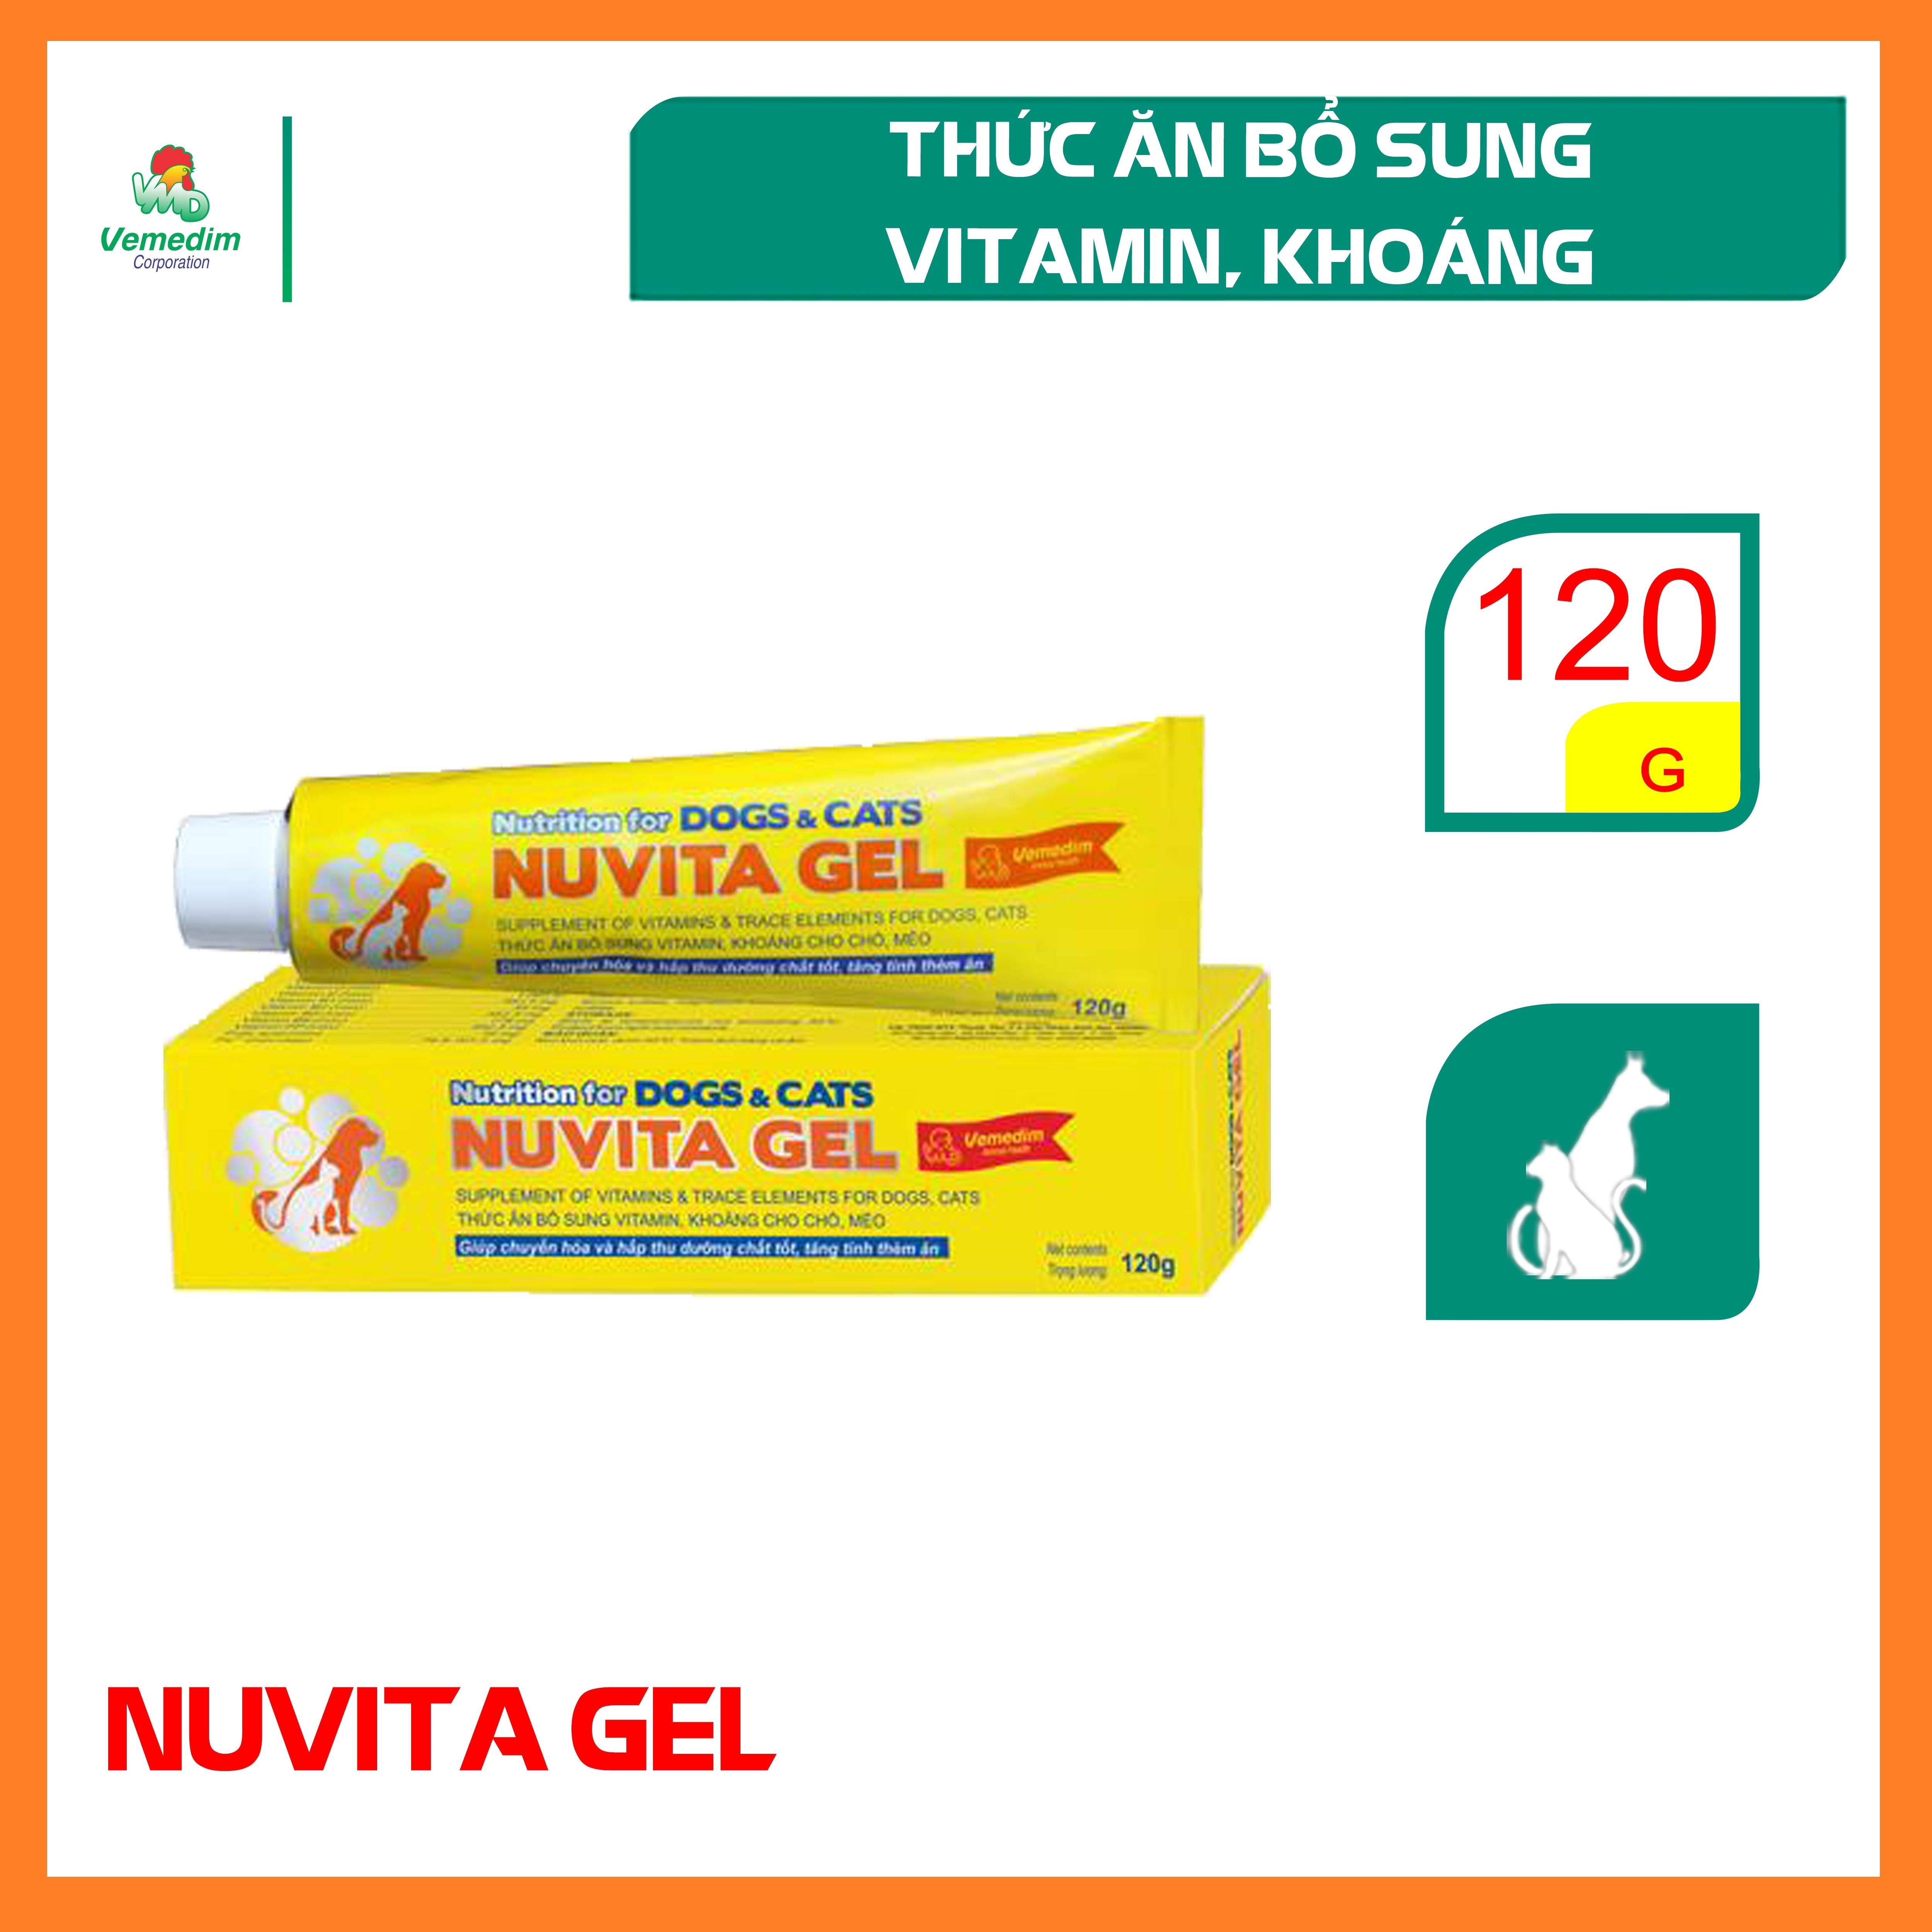 Vemedim Nuvita gel bổ sung vitamin, khoáng cho chó, mèo - tube nhôm vàng 120g